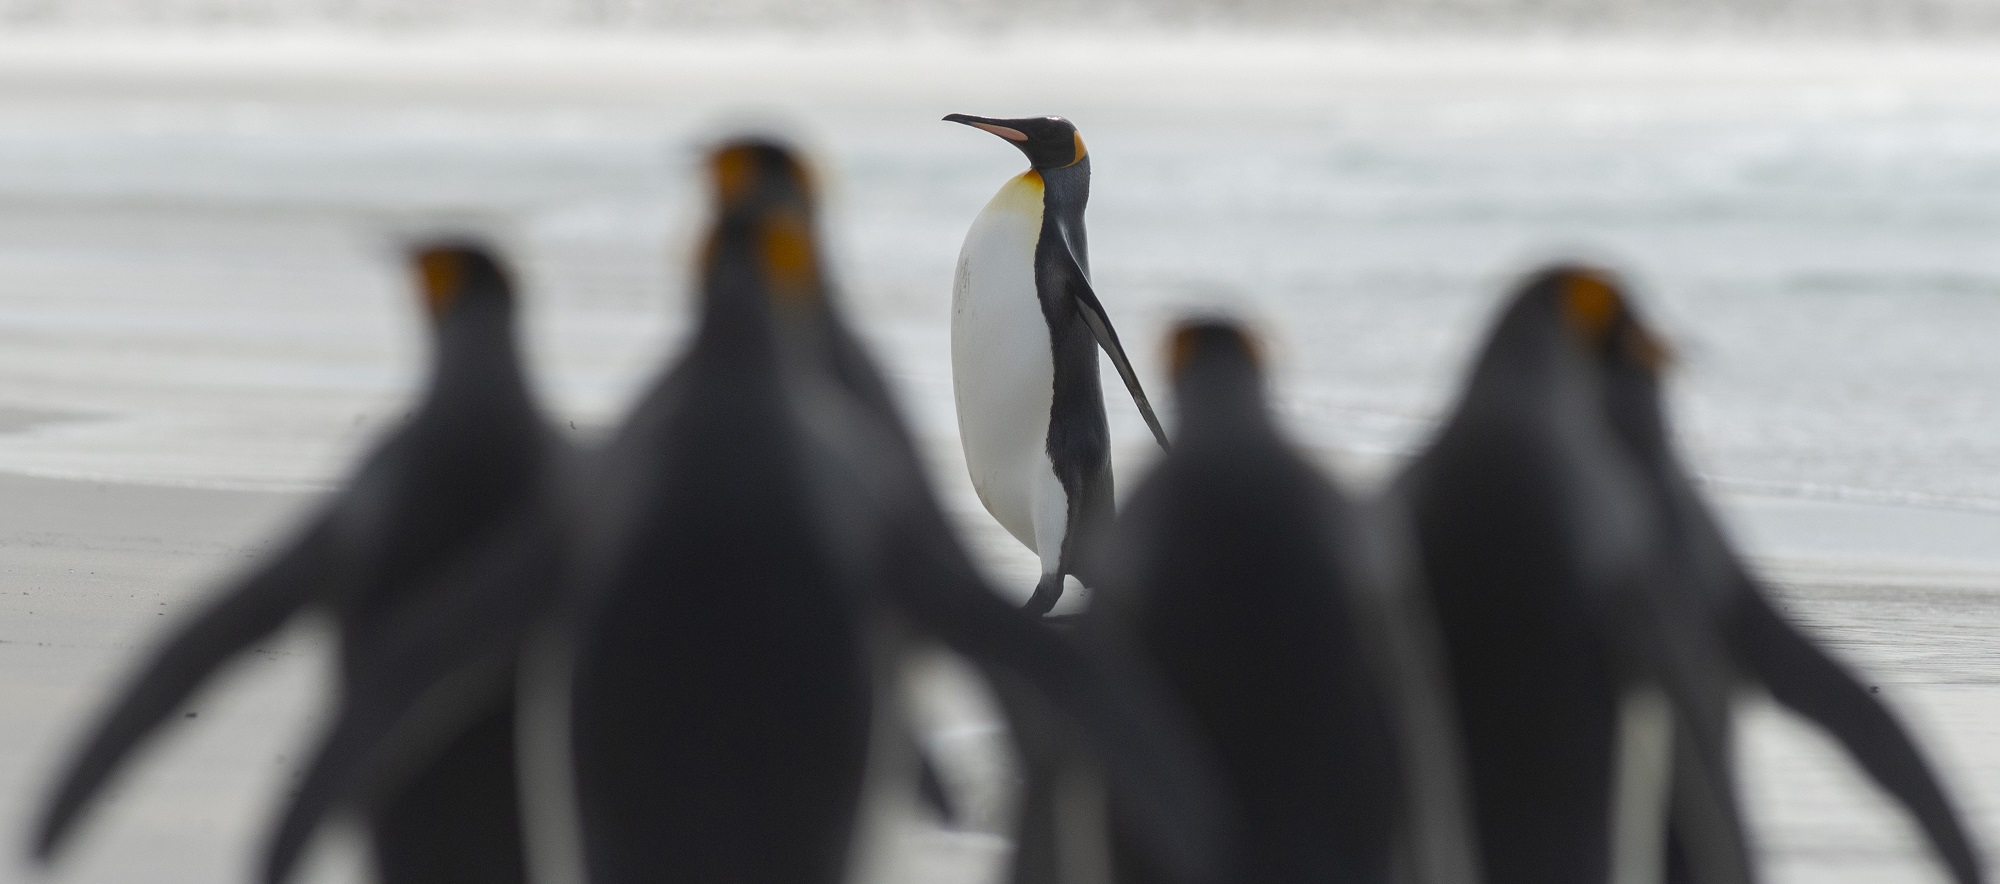 Descubren "raro" pingüino blanco en Islas Galápagos: expertos apuntan que podría tener leucismo